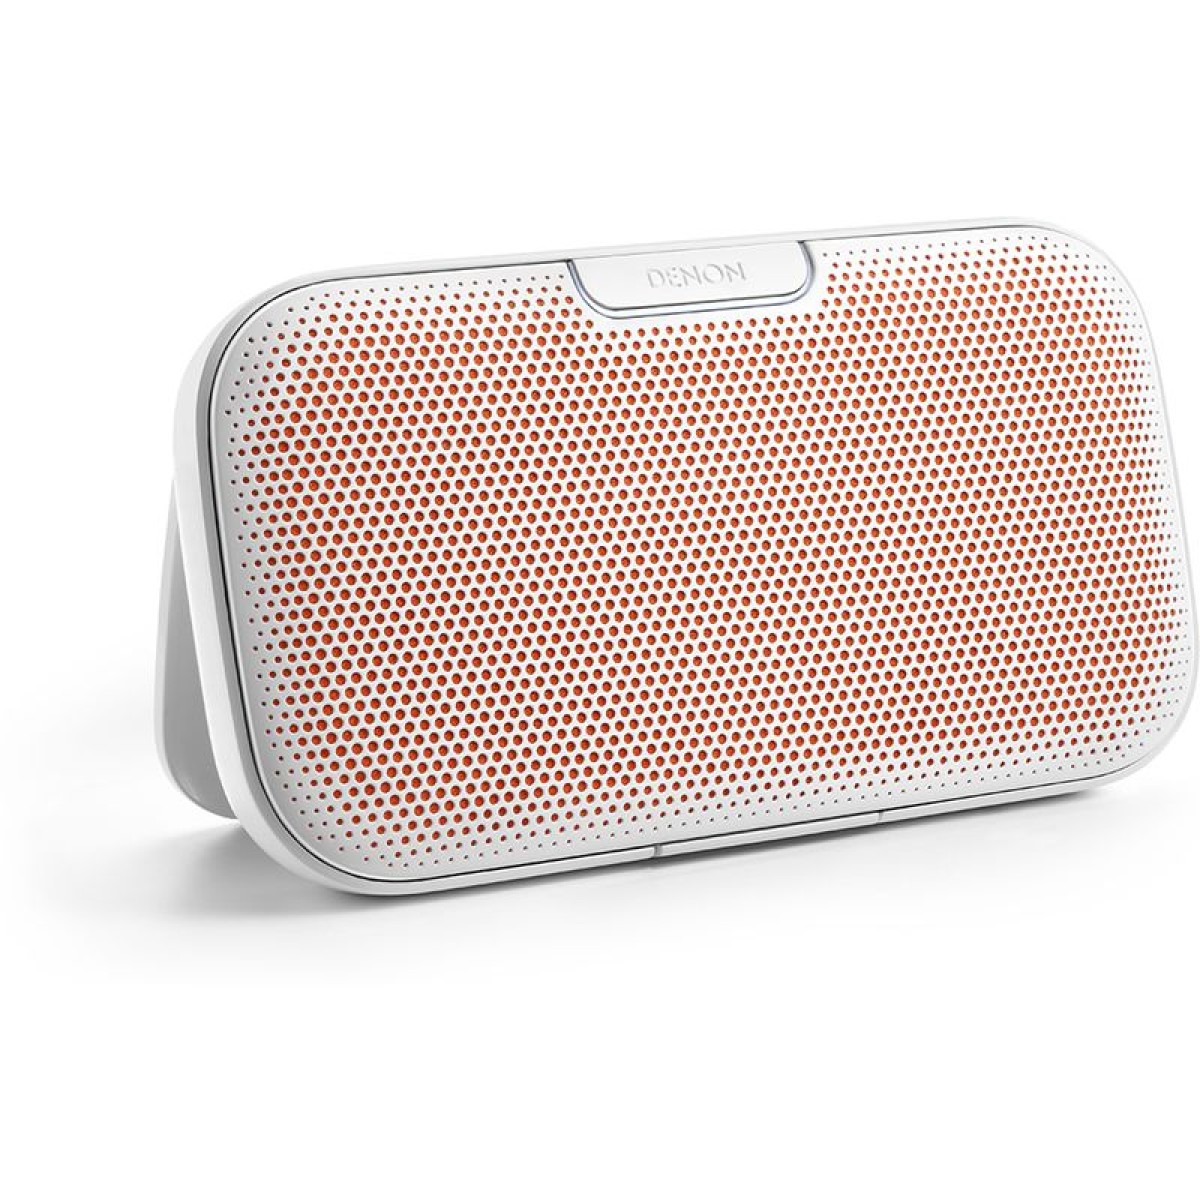 Hier sehen Sie den Artikel Envaya DSB-200 Bluetooth Speaker white aus der Kategorie Enceintes bluetooth. Dieser Artikel ist erhältlich bei cebrands.ch